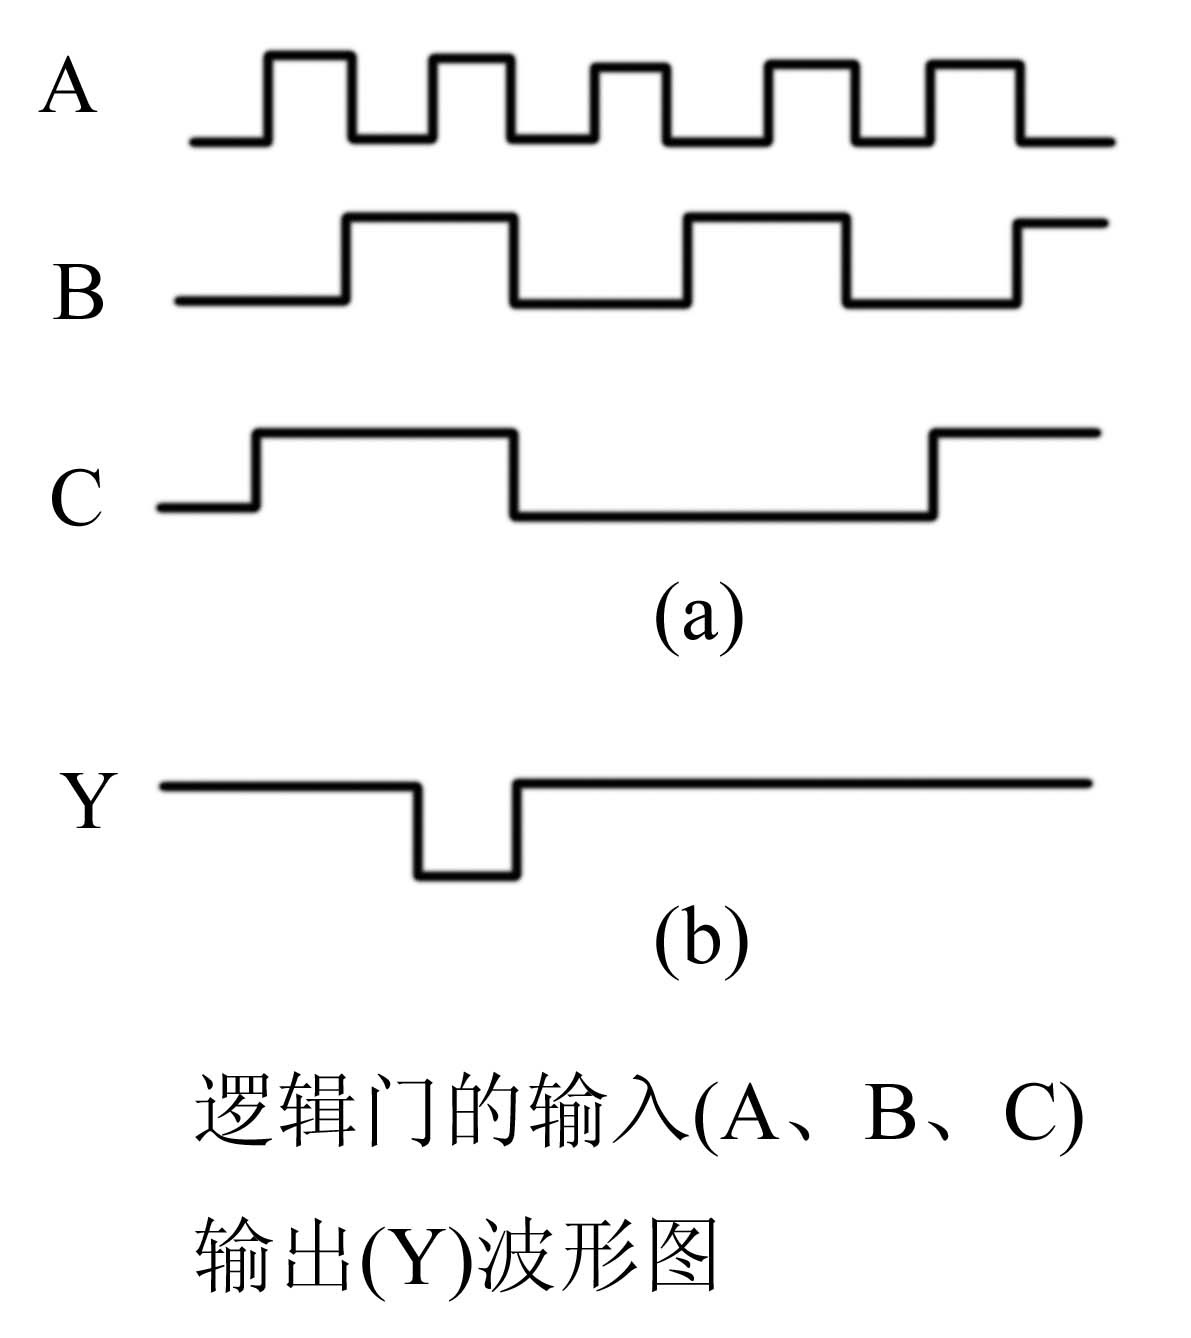 已知有一个3输入端的门电路，若输入信号A、B、C的波形如图 （a)所示，输出信号Y的波形如图（b)所